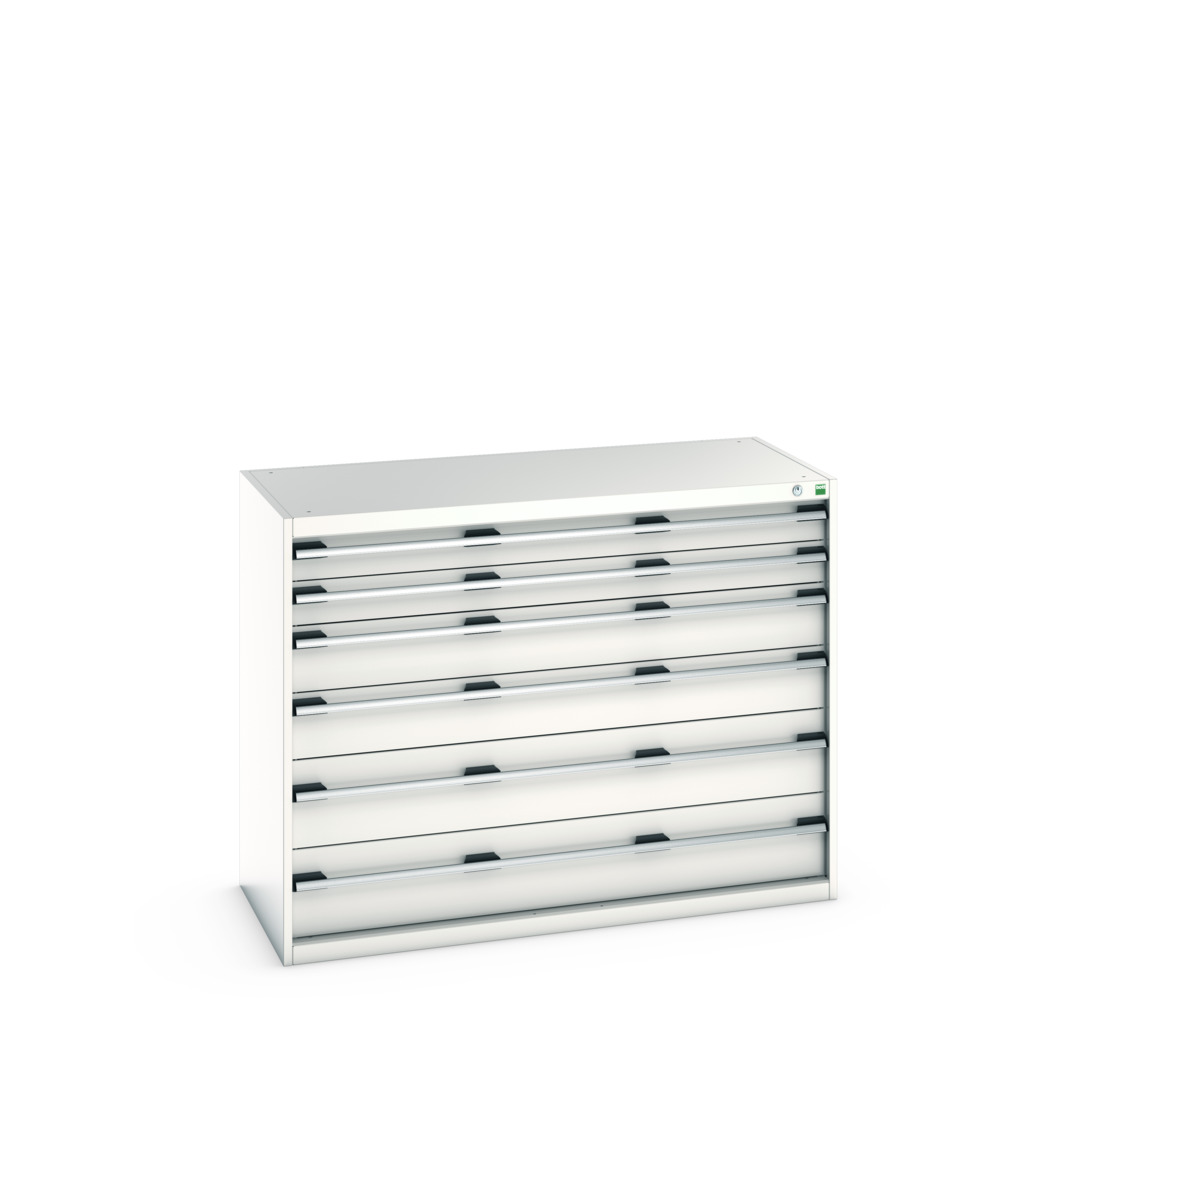 40022124.16V - cubio drawer cabinet